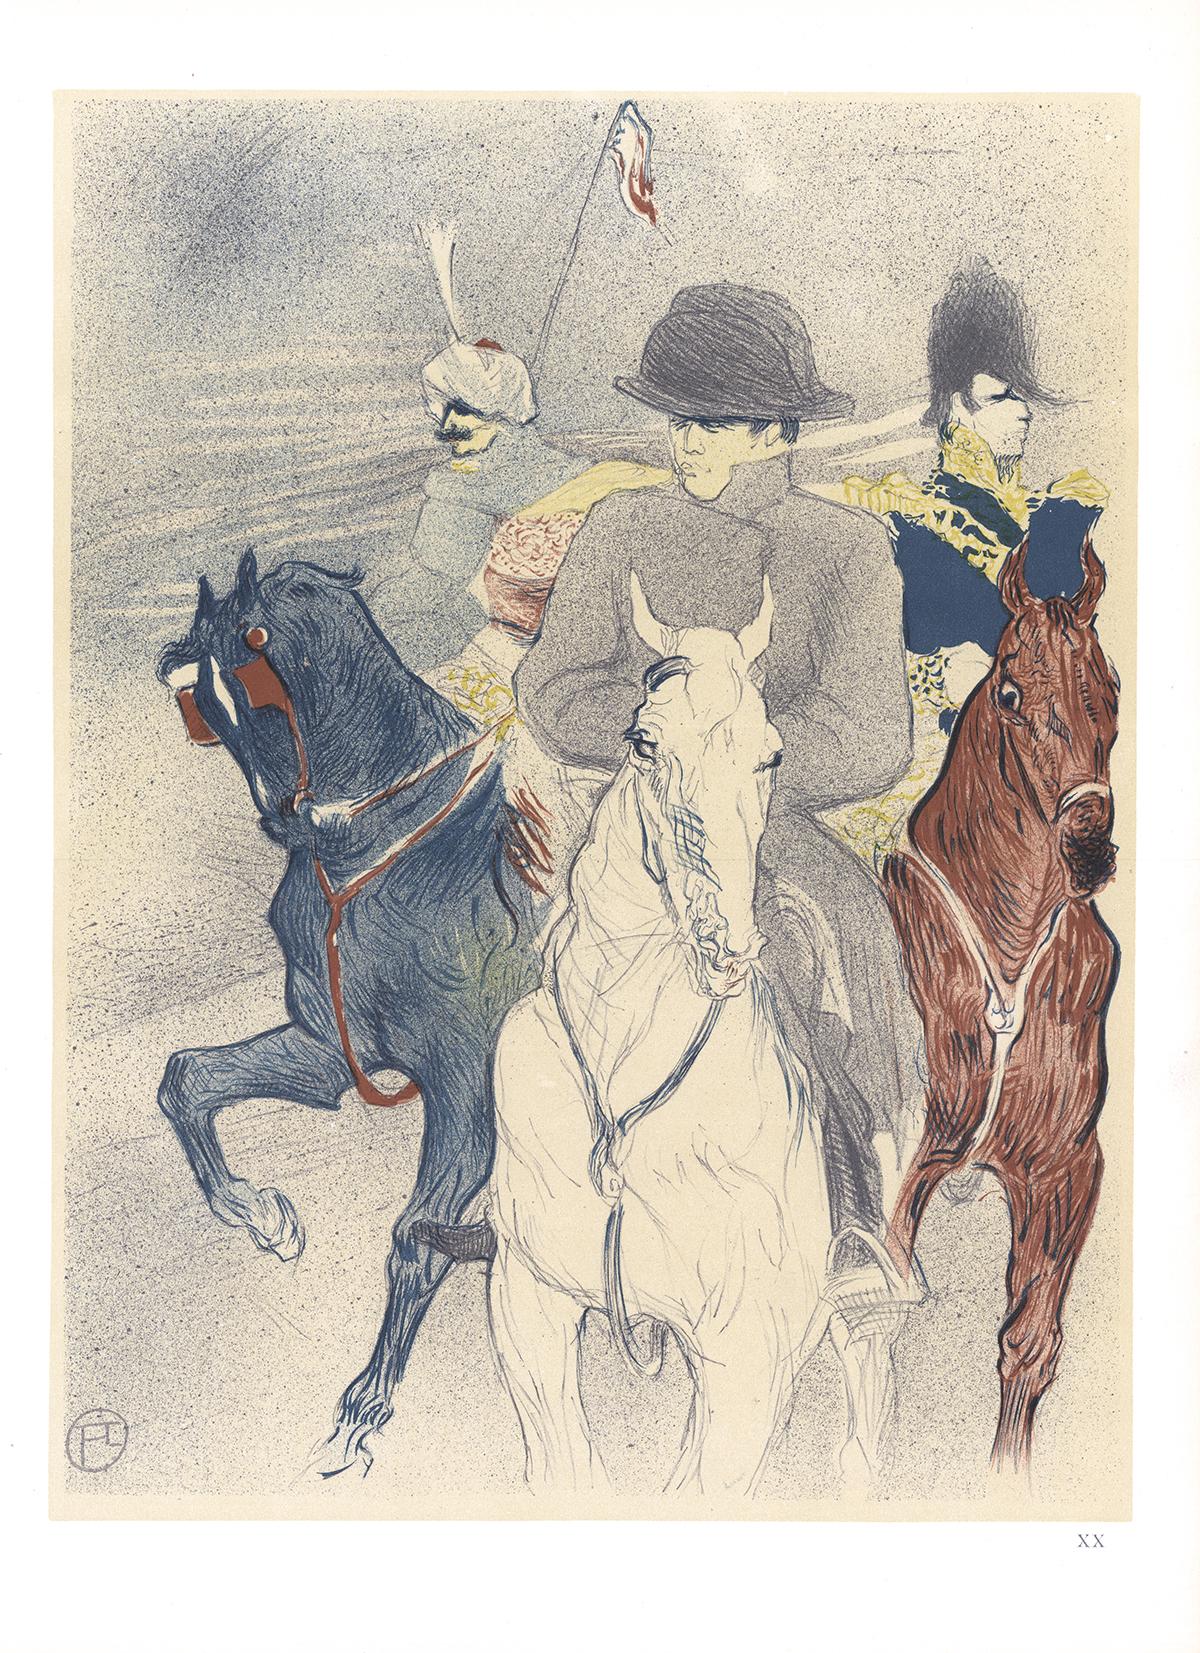 Henri de Toulouse-Lautrec-Napoleon-14.5" x 10.5"-Lithograph-1966-Art Nouveau - Print by (After) Henri Toulouse Lautrec